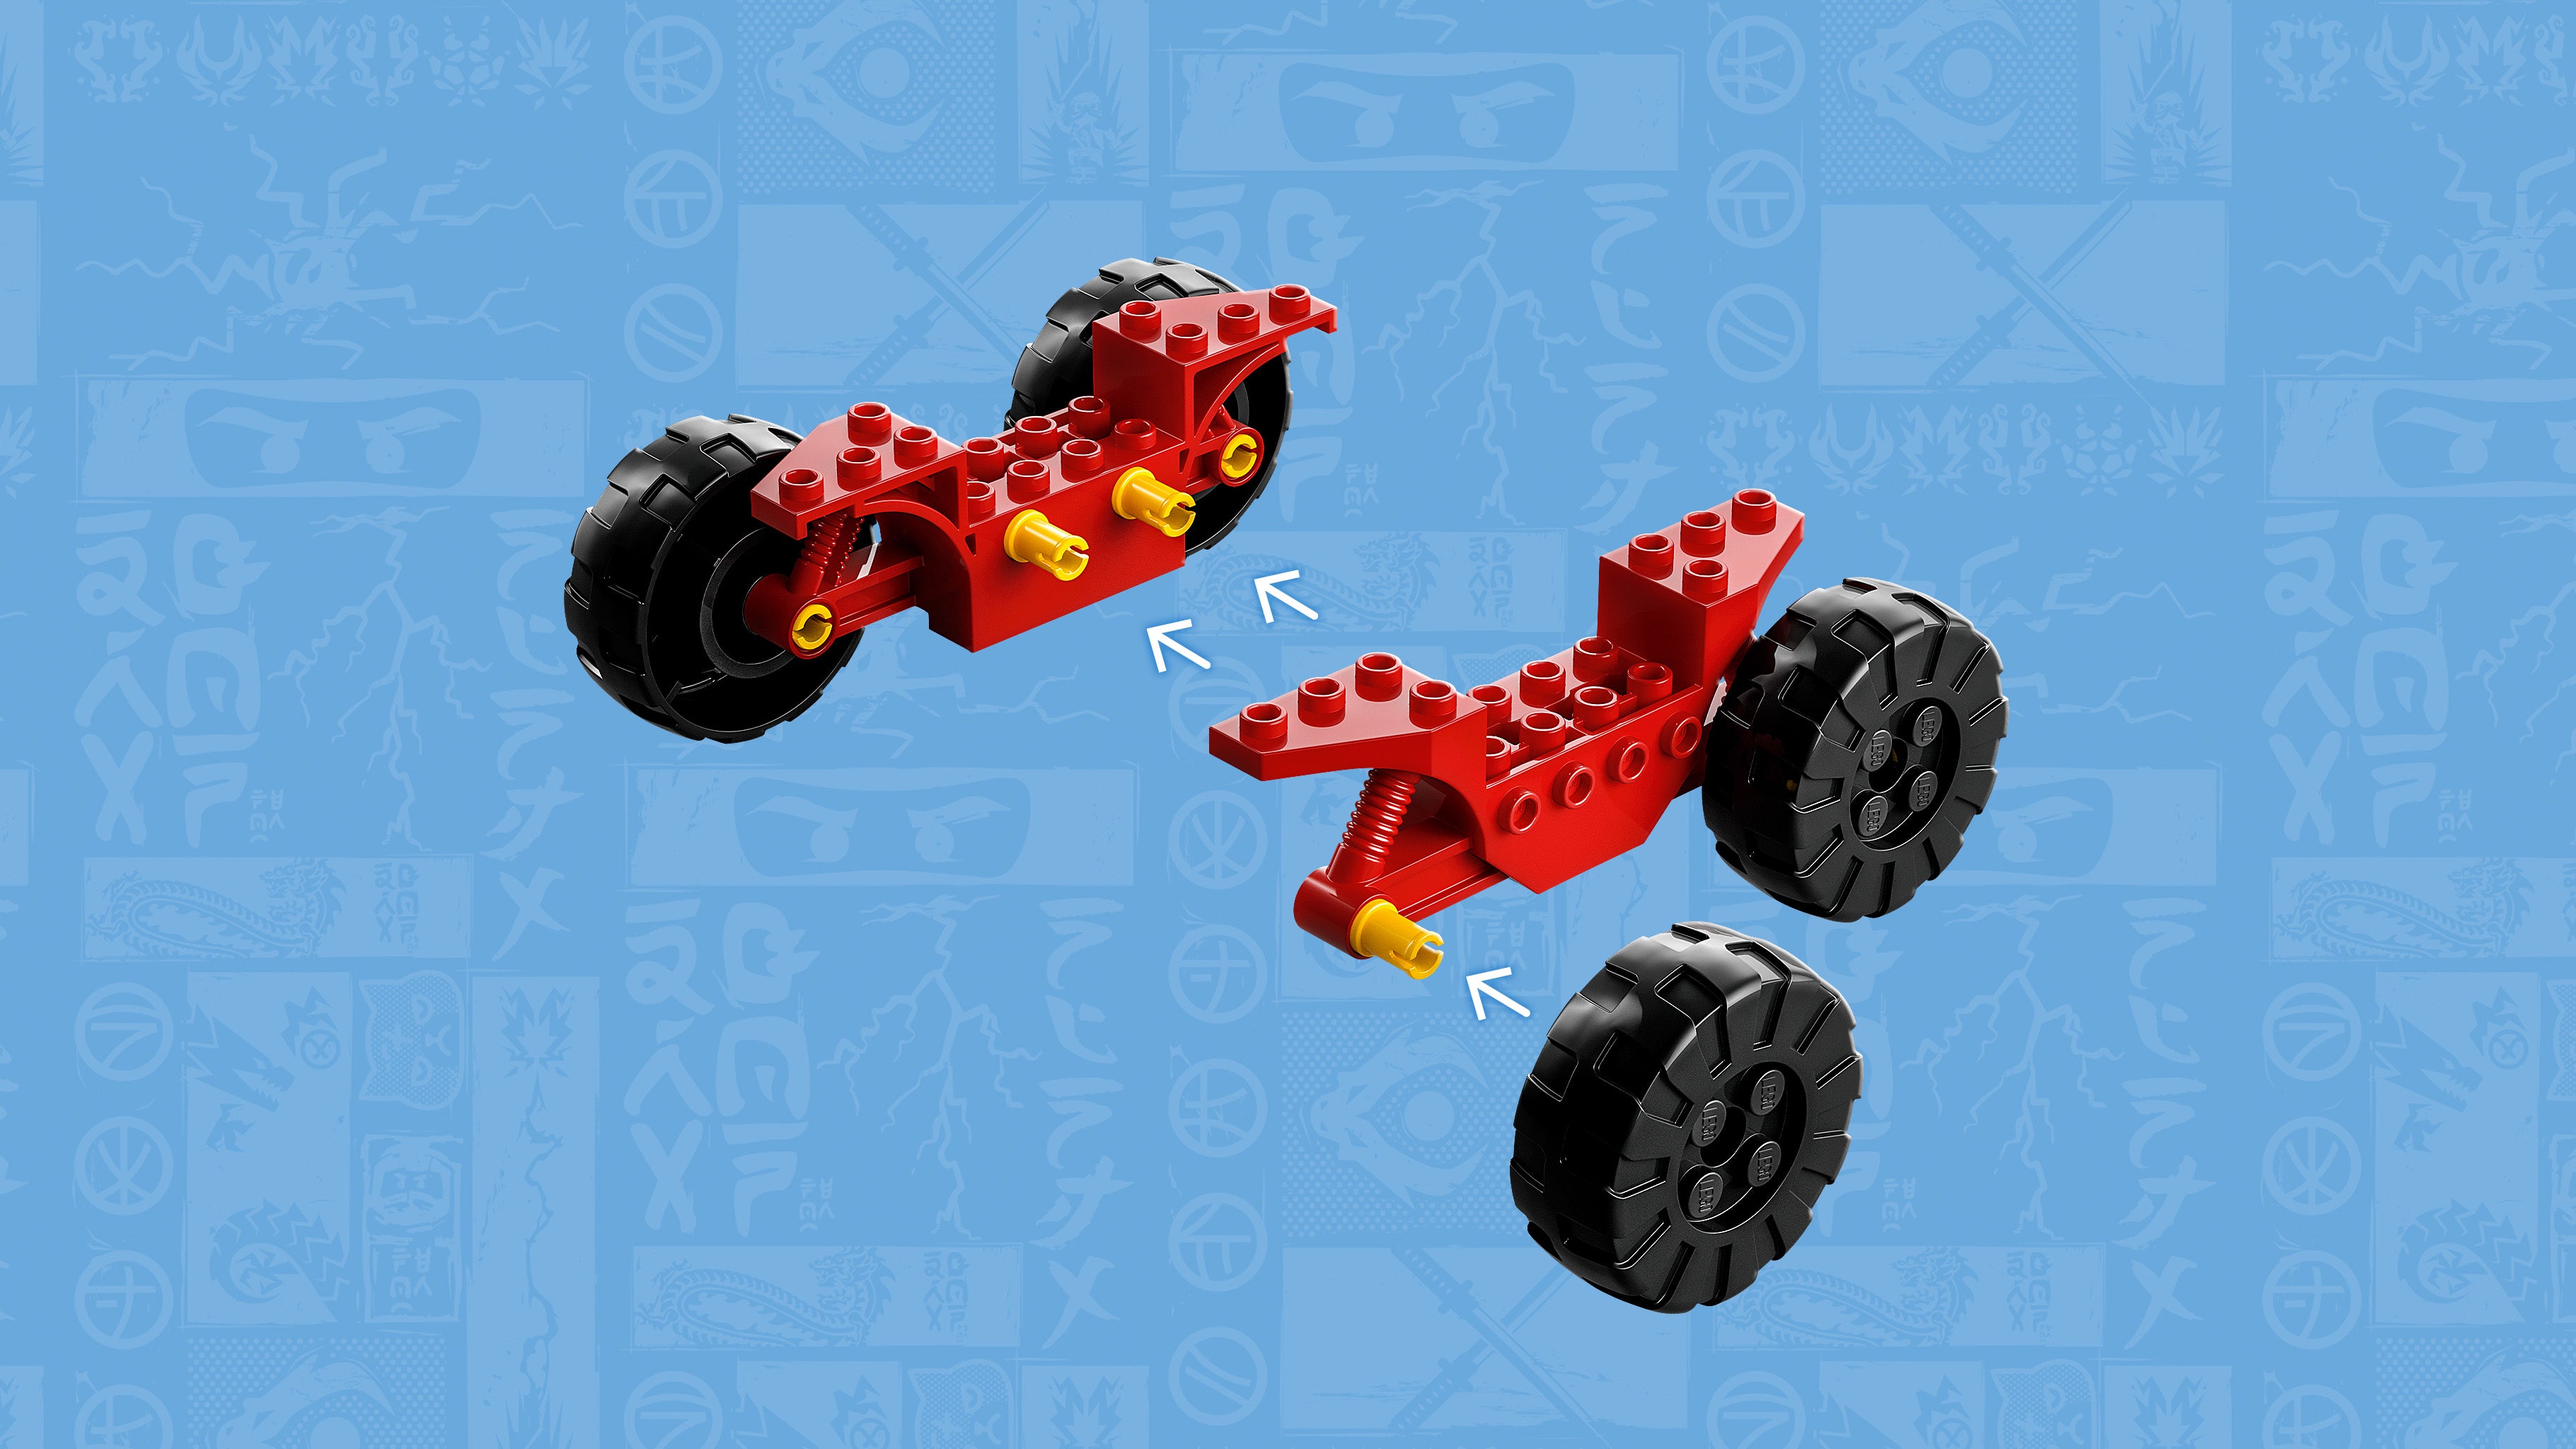 Lego 71789 Kai and Rass Car and Bike